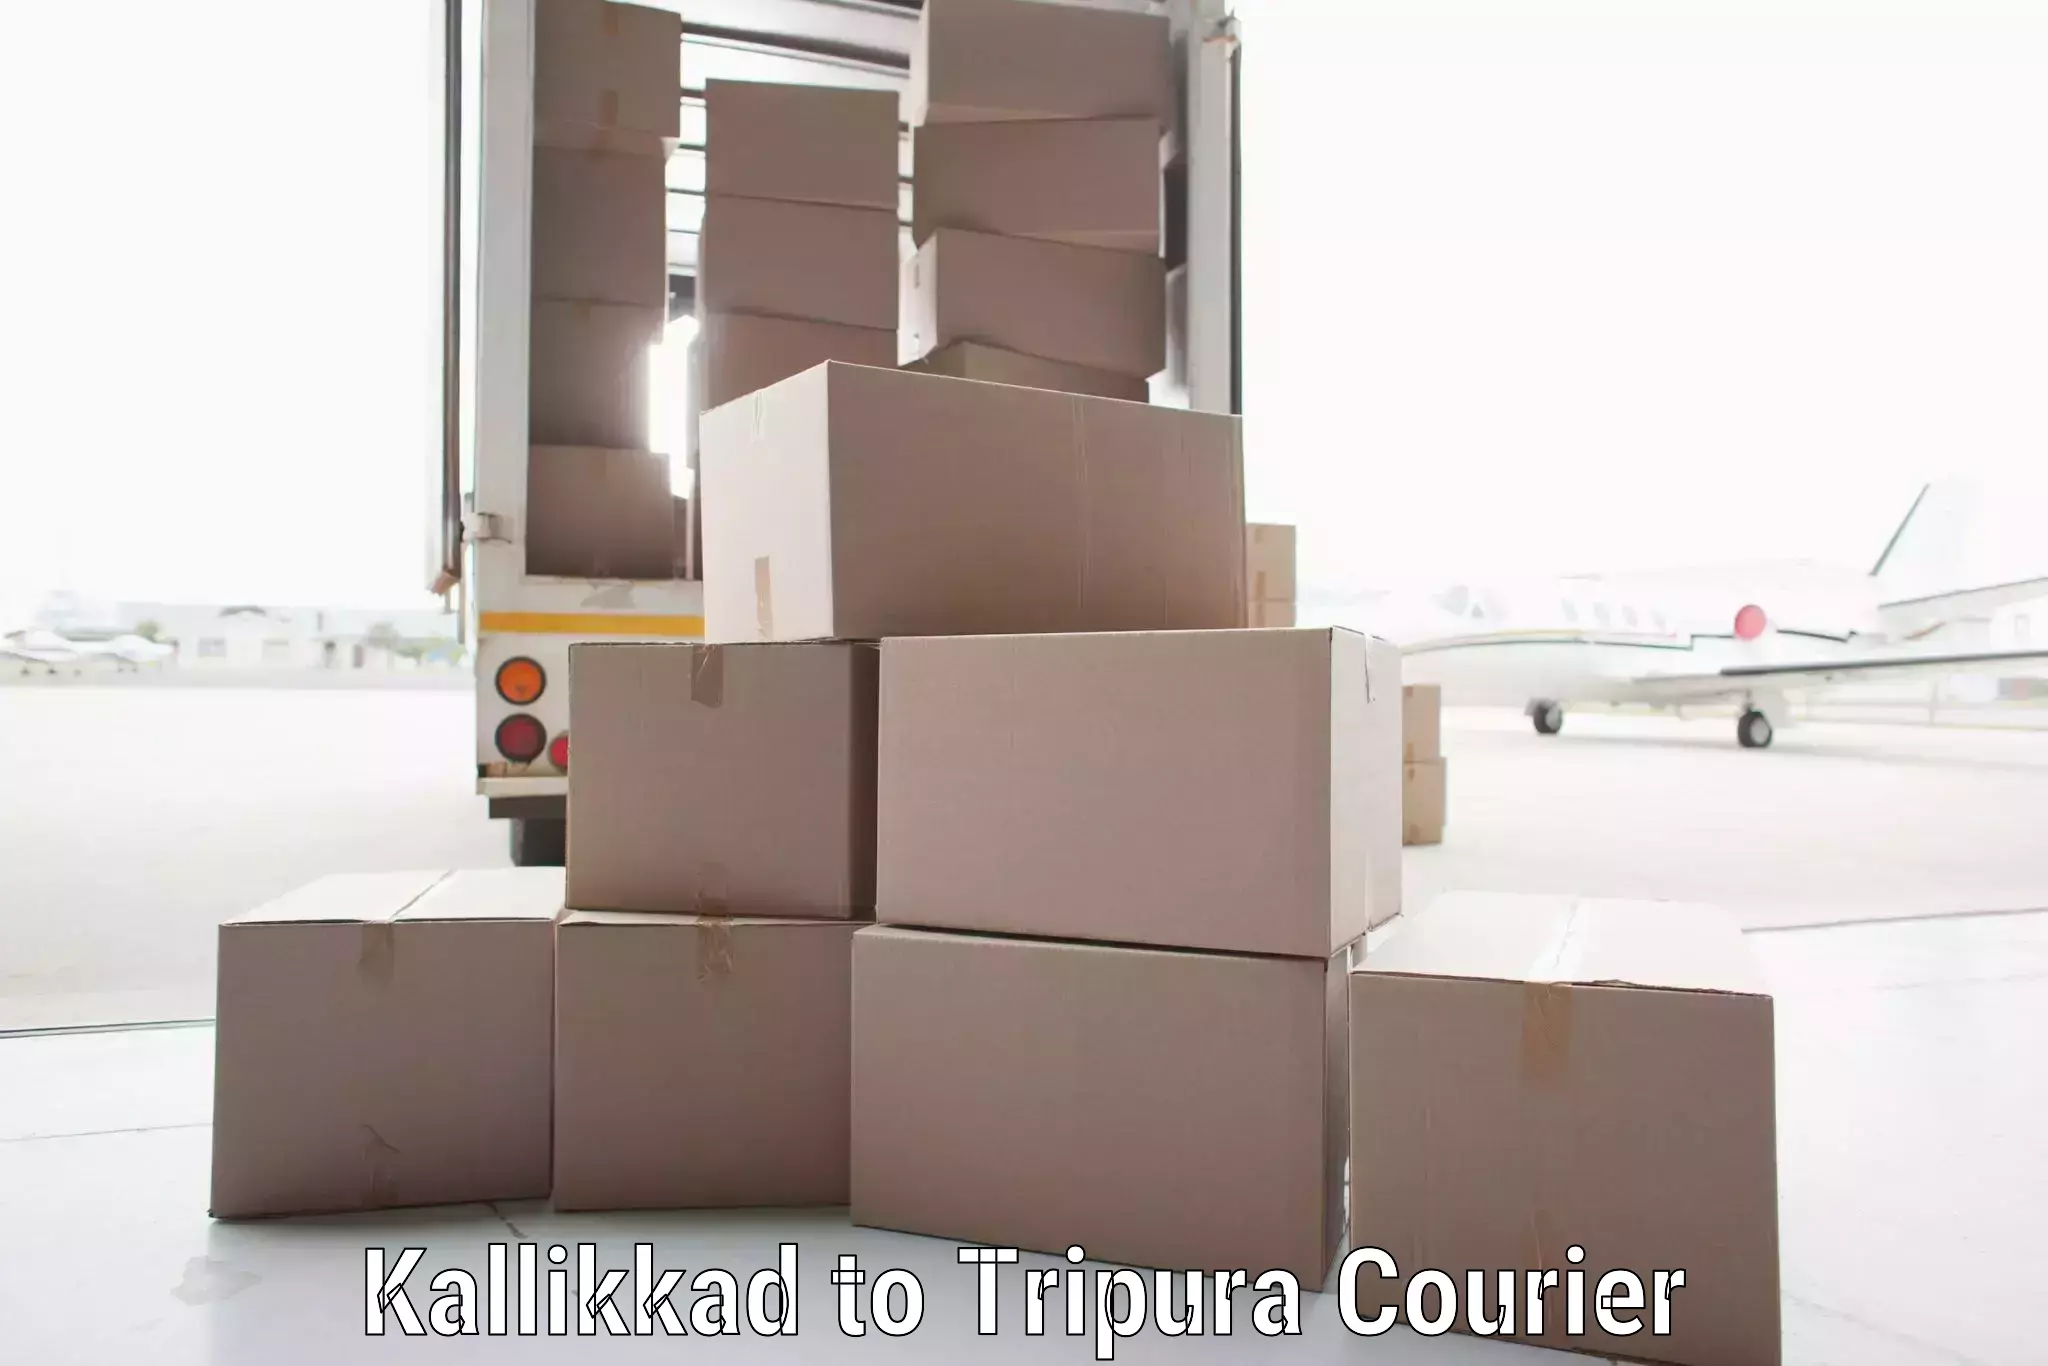 Flexible parcel services Kallikkad to Kailashahar